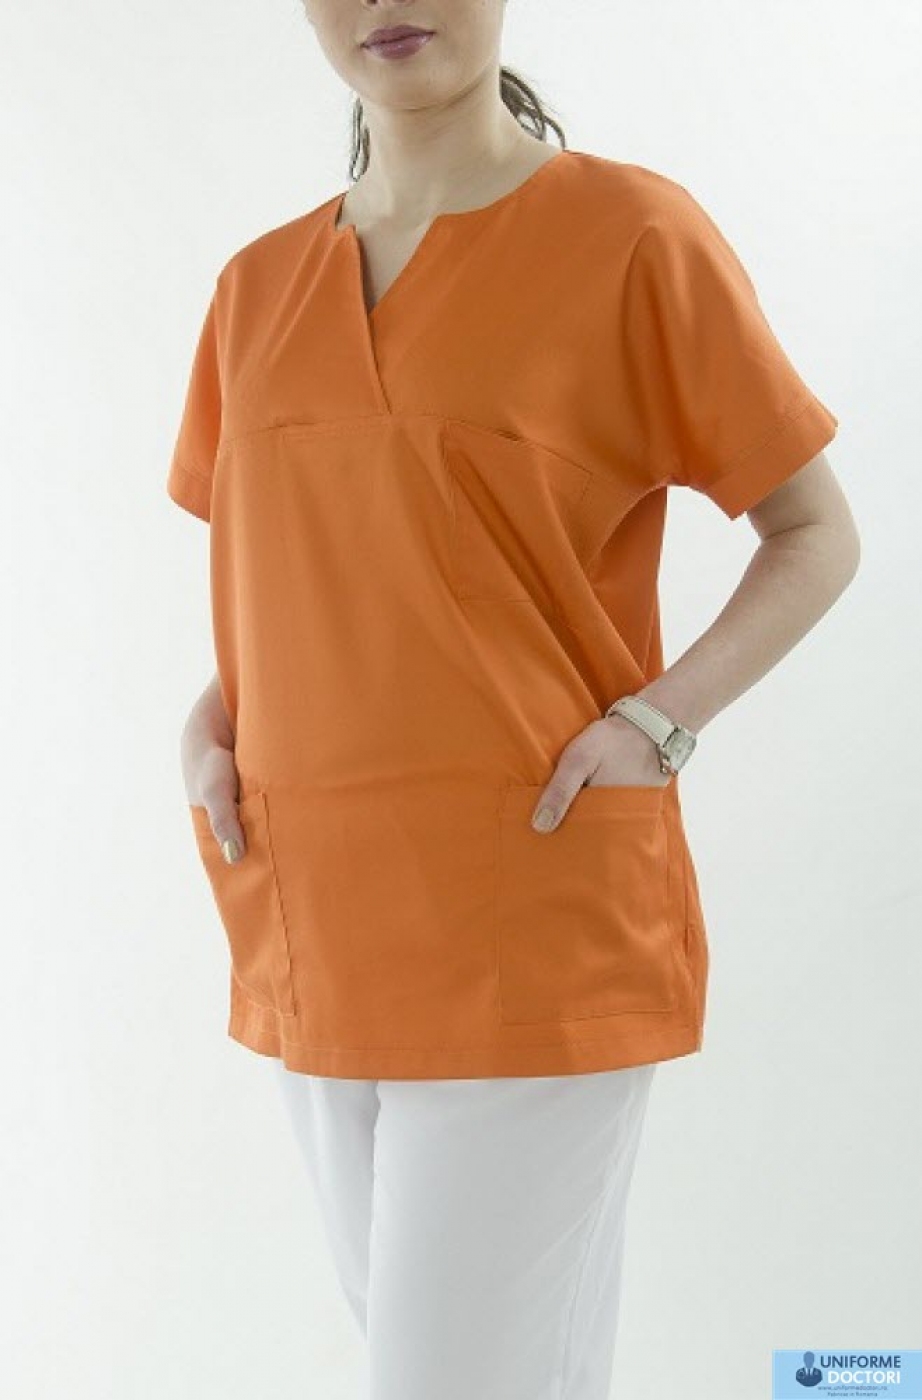 Uniforme medicale â€“ Bluza medicala cu maneca scurta si guler in achior